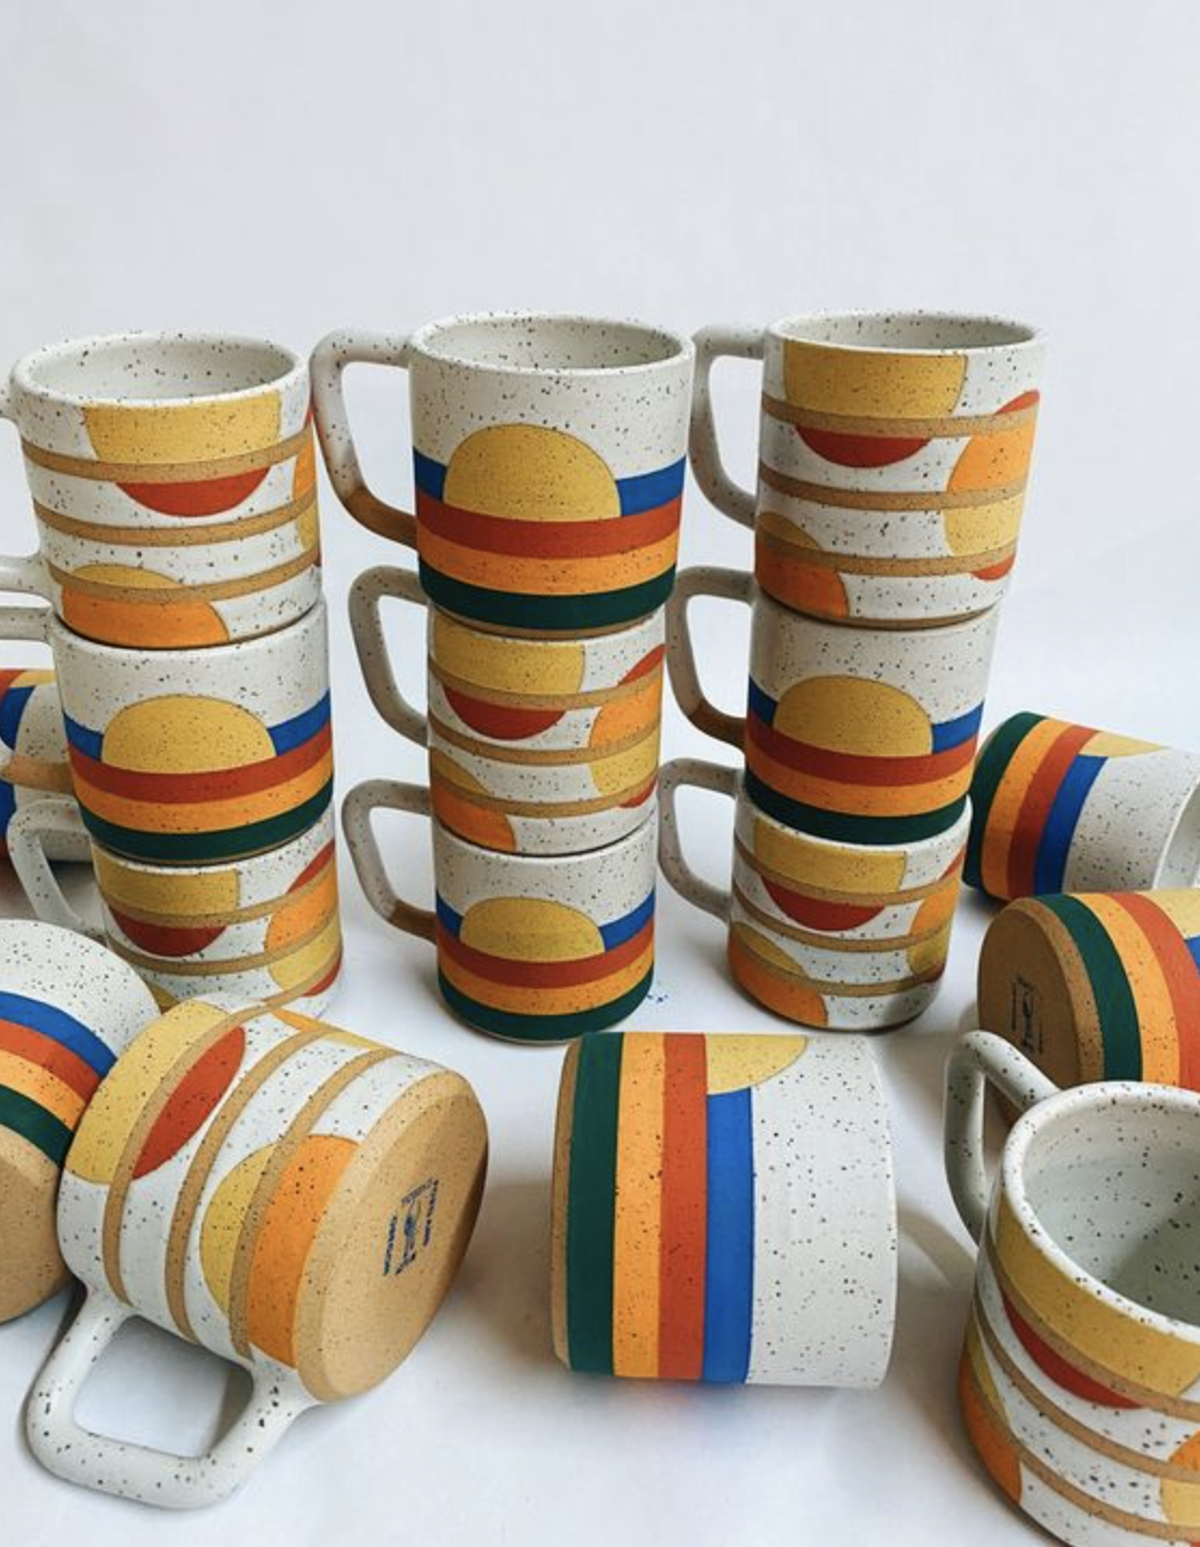 stacks of colorful ceramic mugs